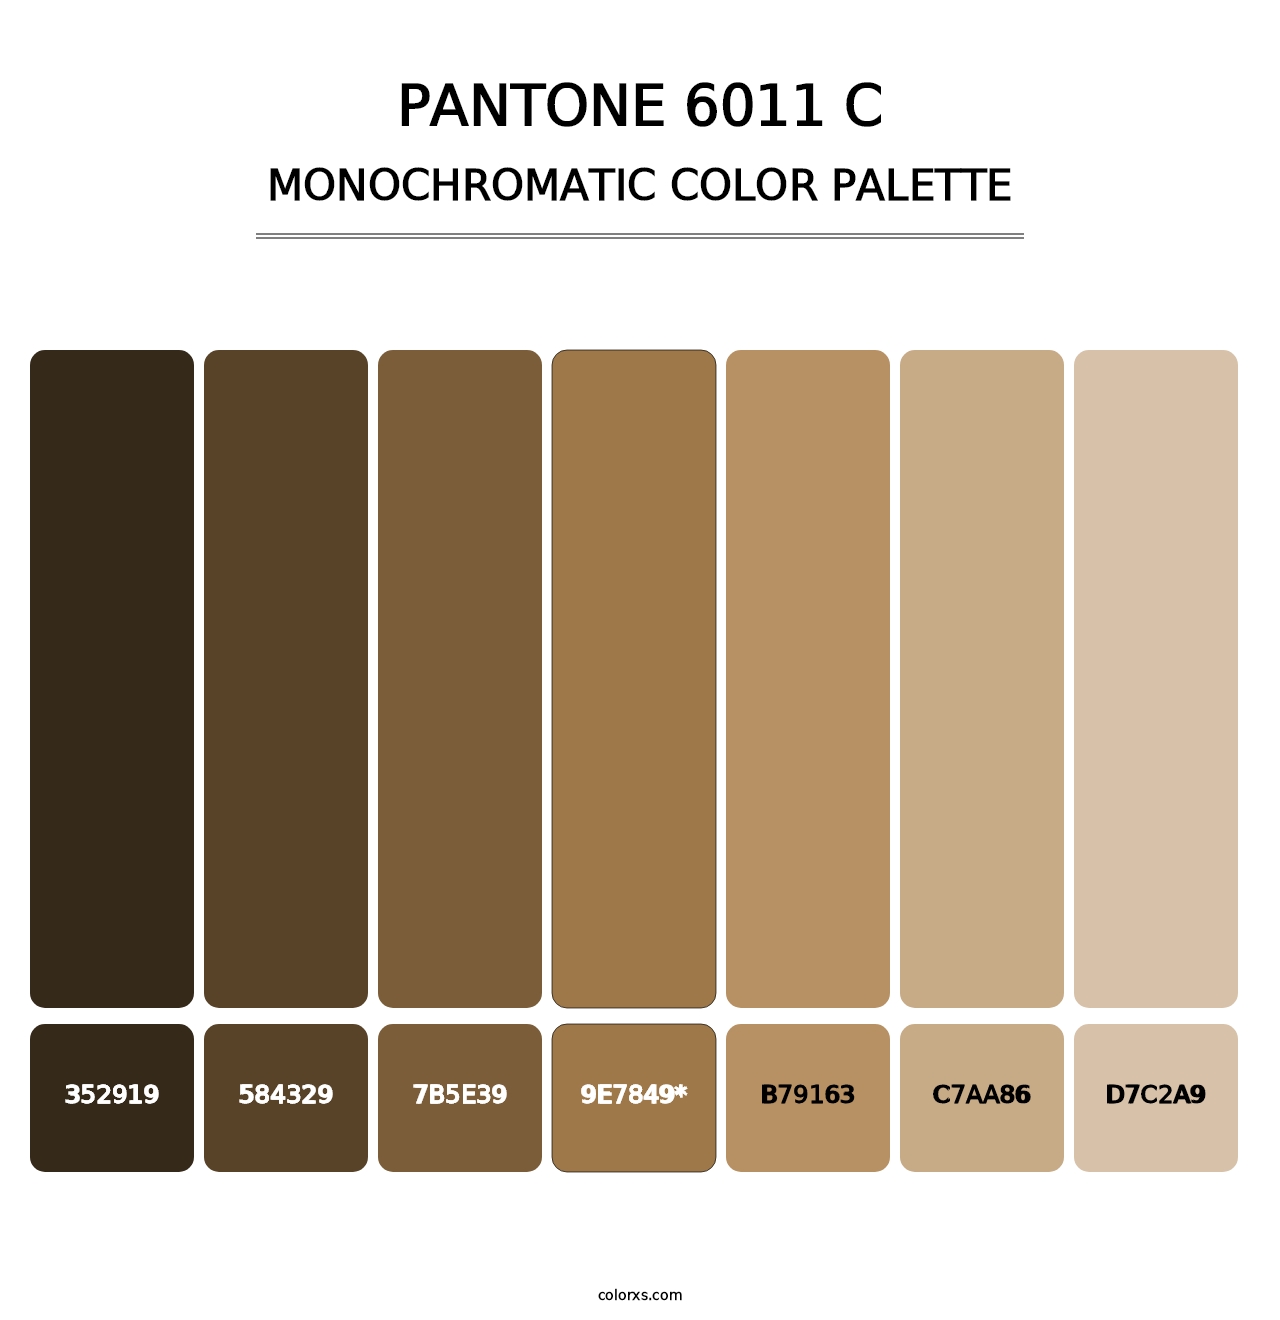 PANTONE 6011 C - Monochromatic Color Palette